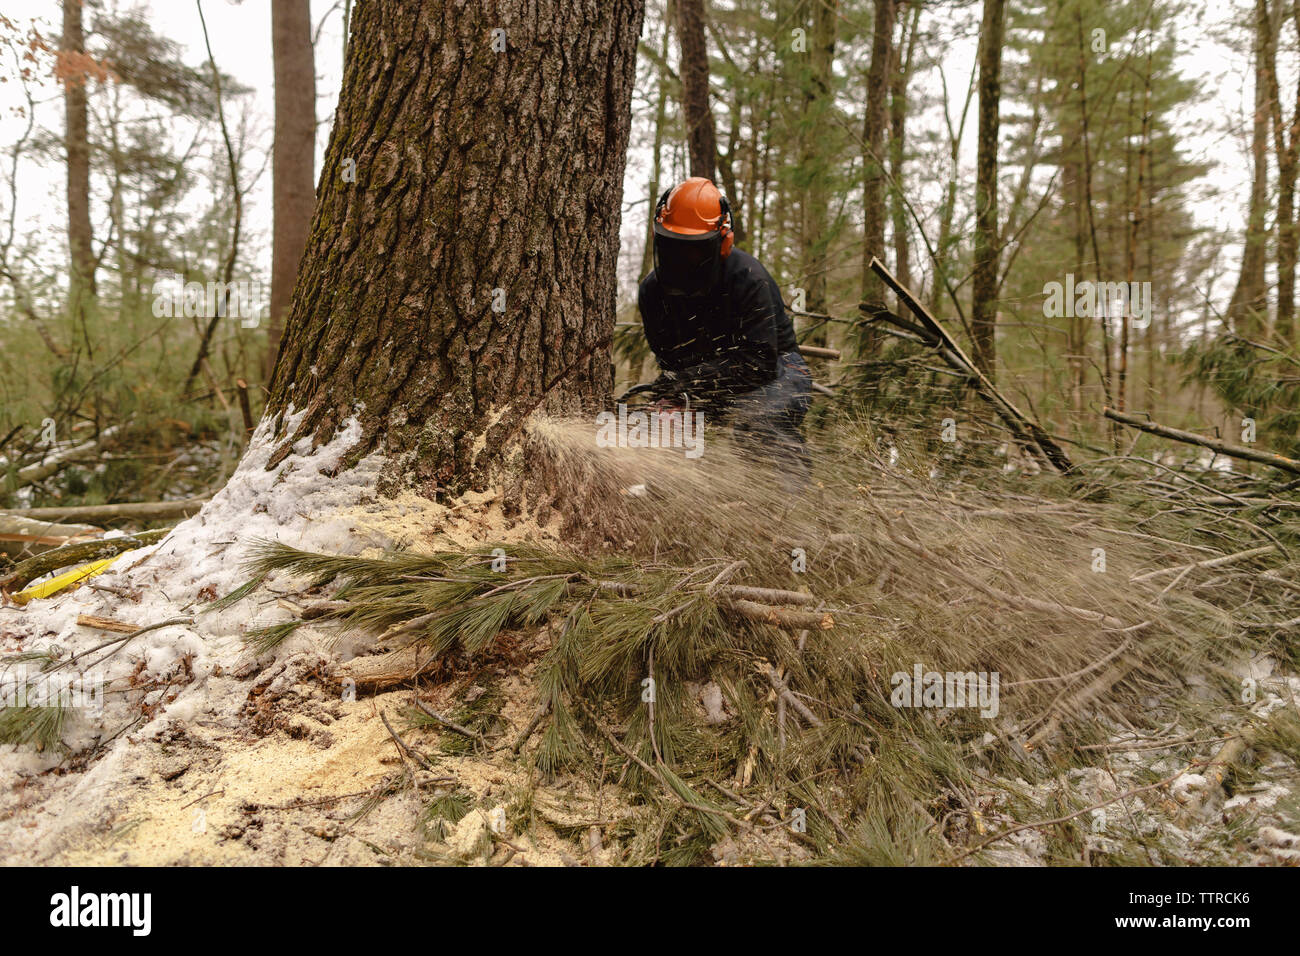 Holzfäller sägen Baum im Wald Stockfoto